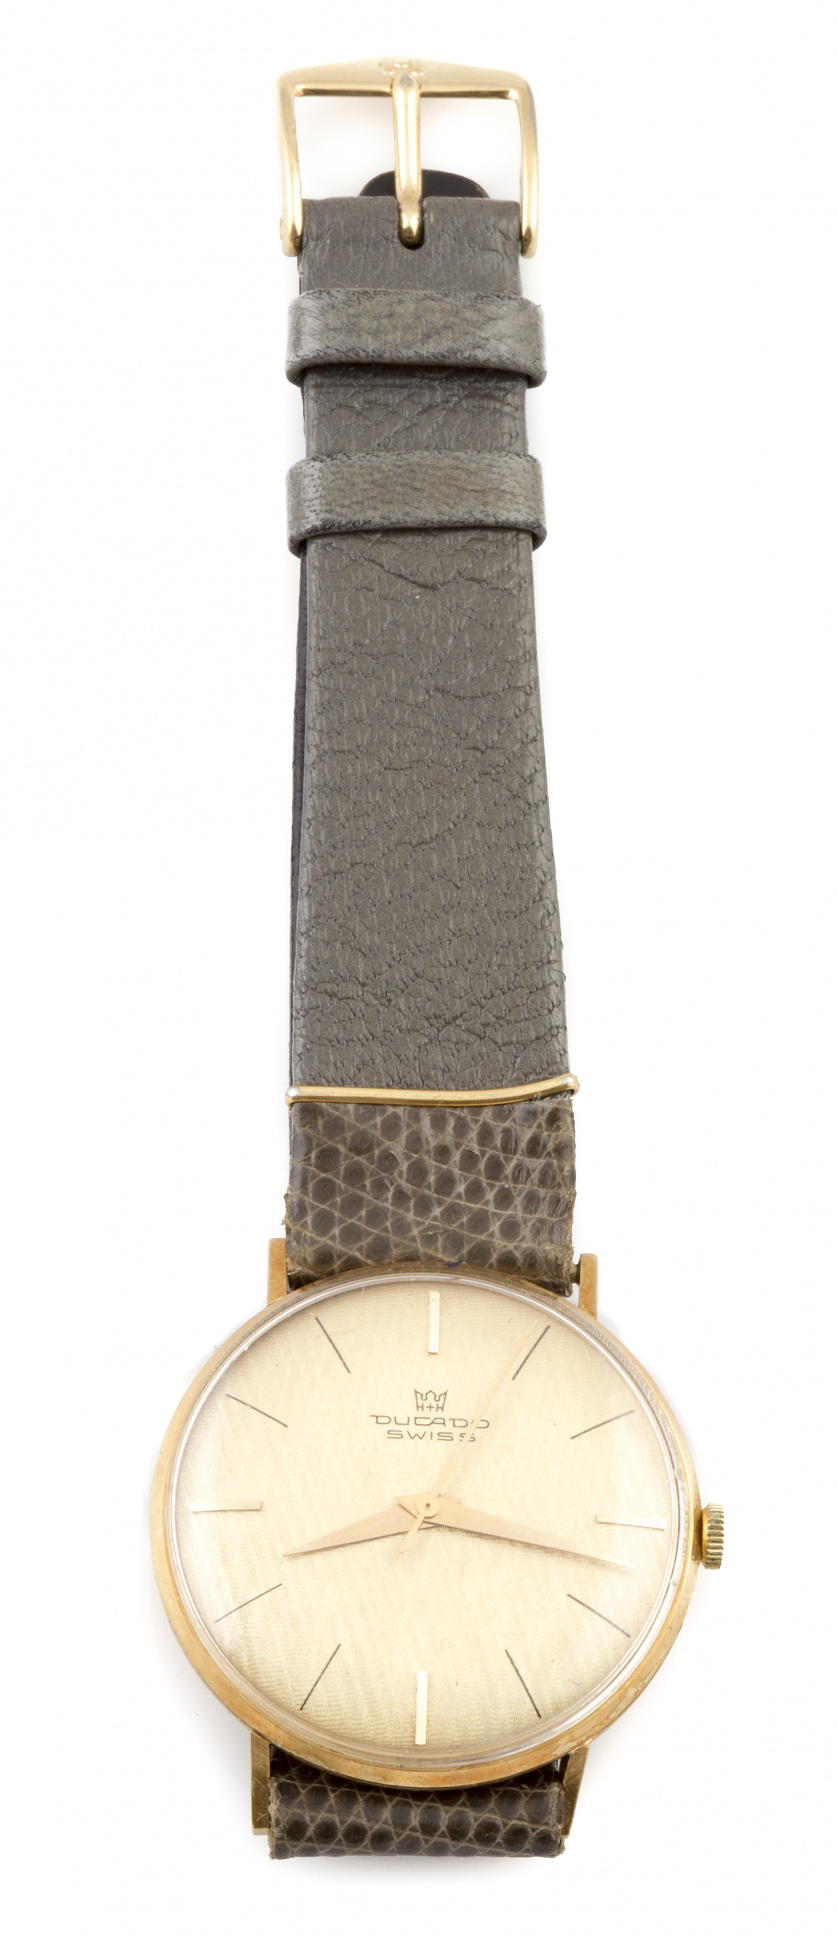 Reloj DUCADO ,suiza años 80 en oro de 18K .Número 3016